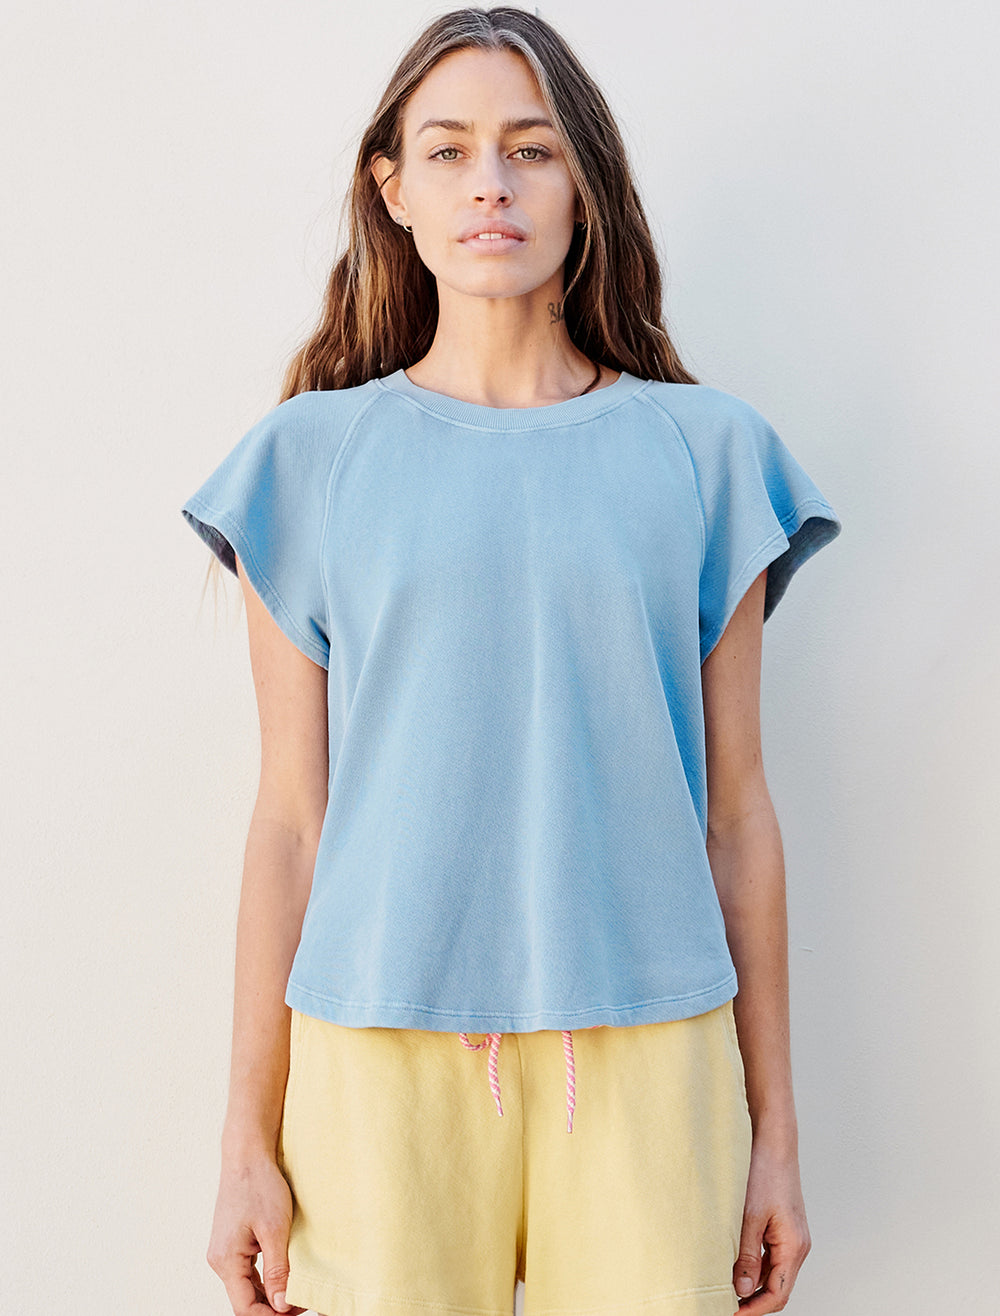 Model wearing Sundry's shirttail sweatshirt in pigment capri.